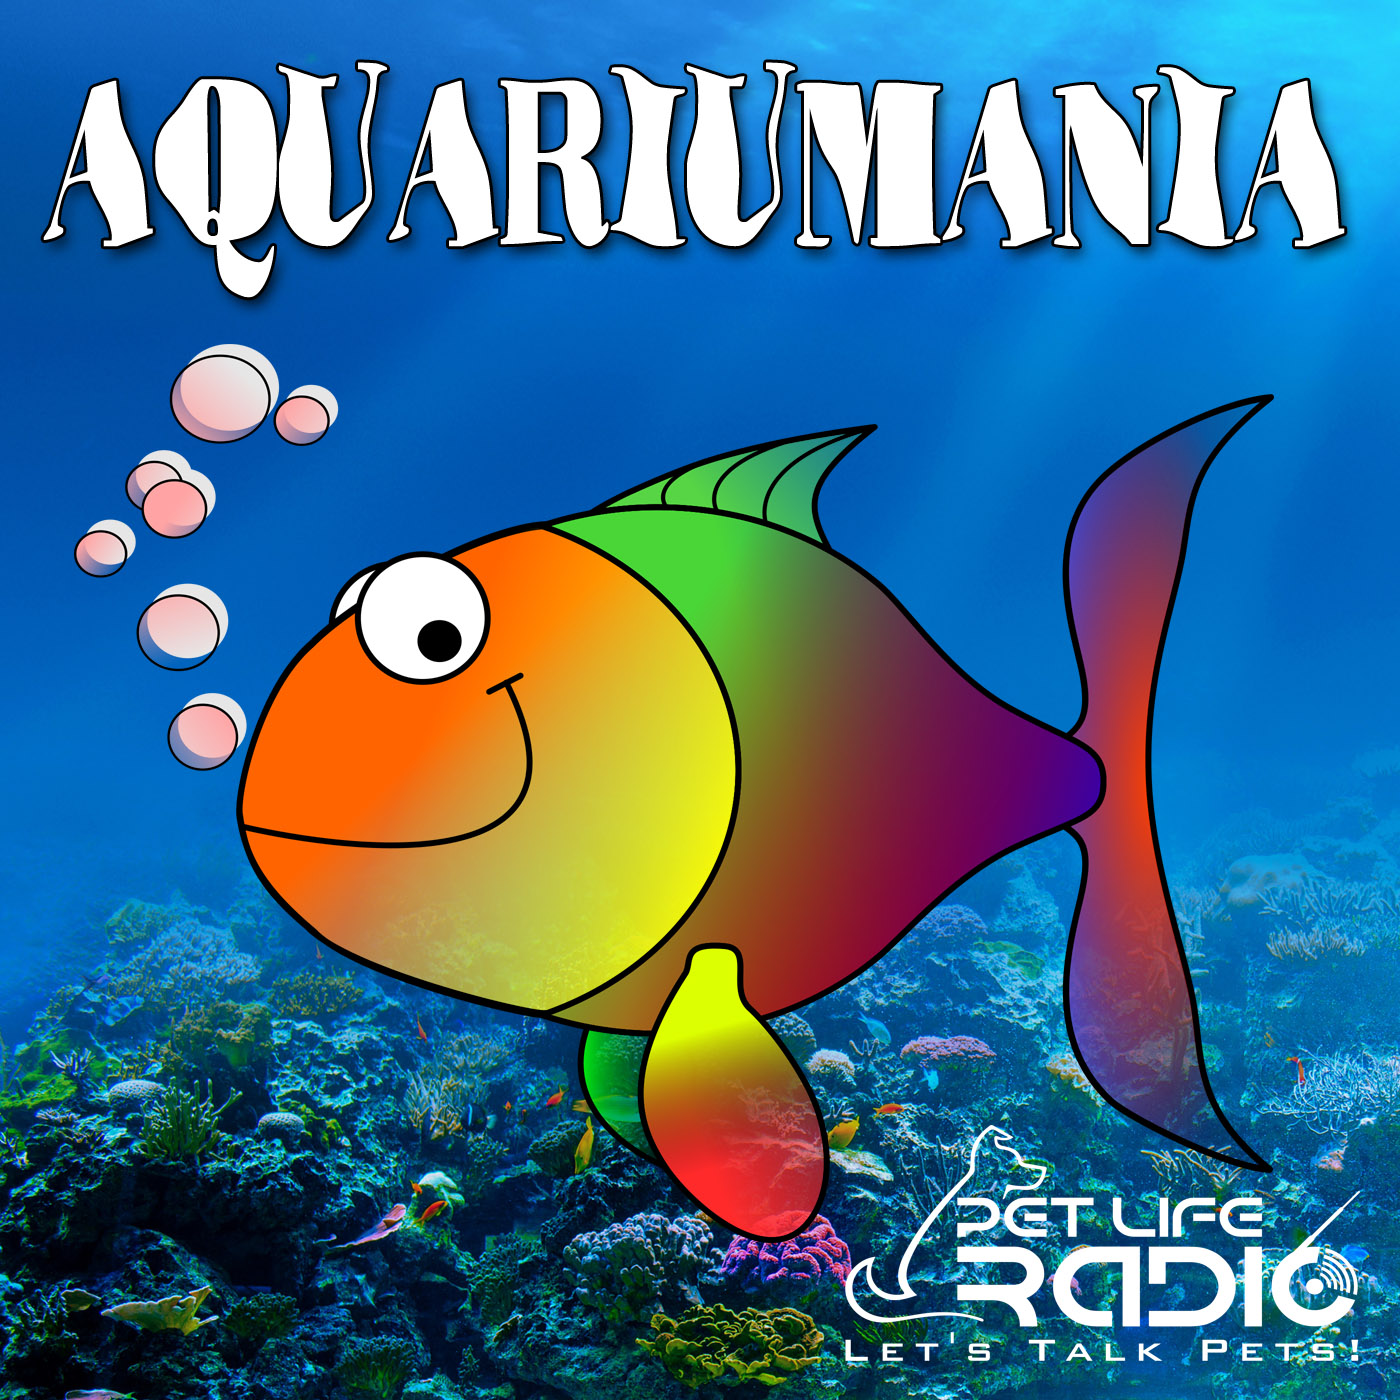 Aquariumania - Tropical Fish as Pets - Pet Life Radio Original (PetLifeRadio.com) Podcast artwork